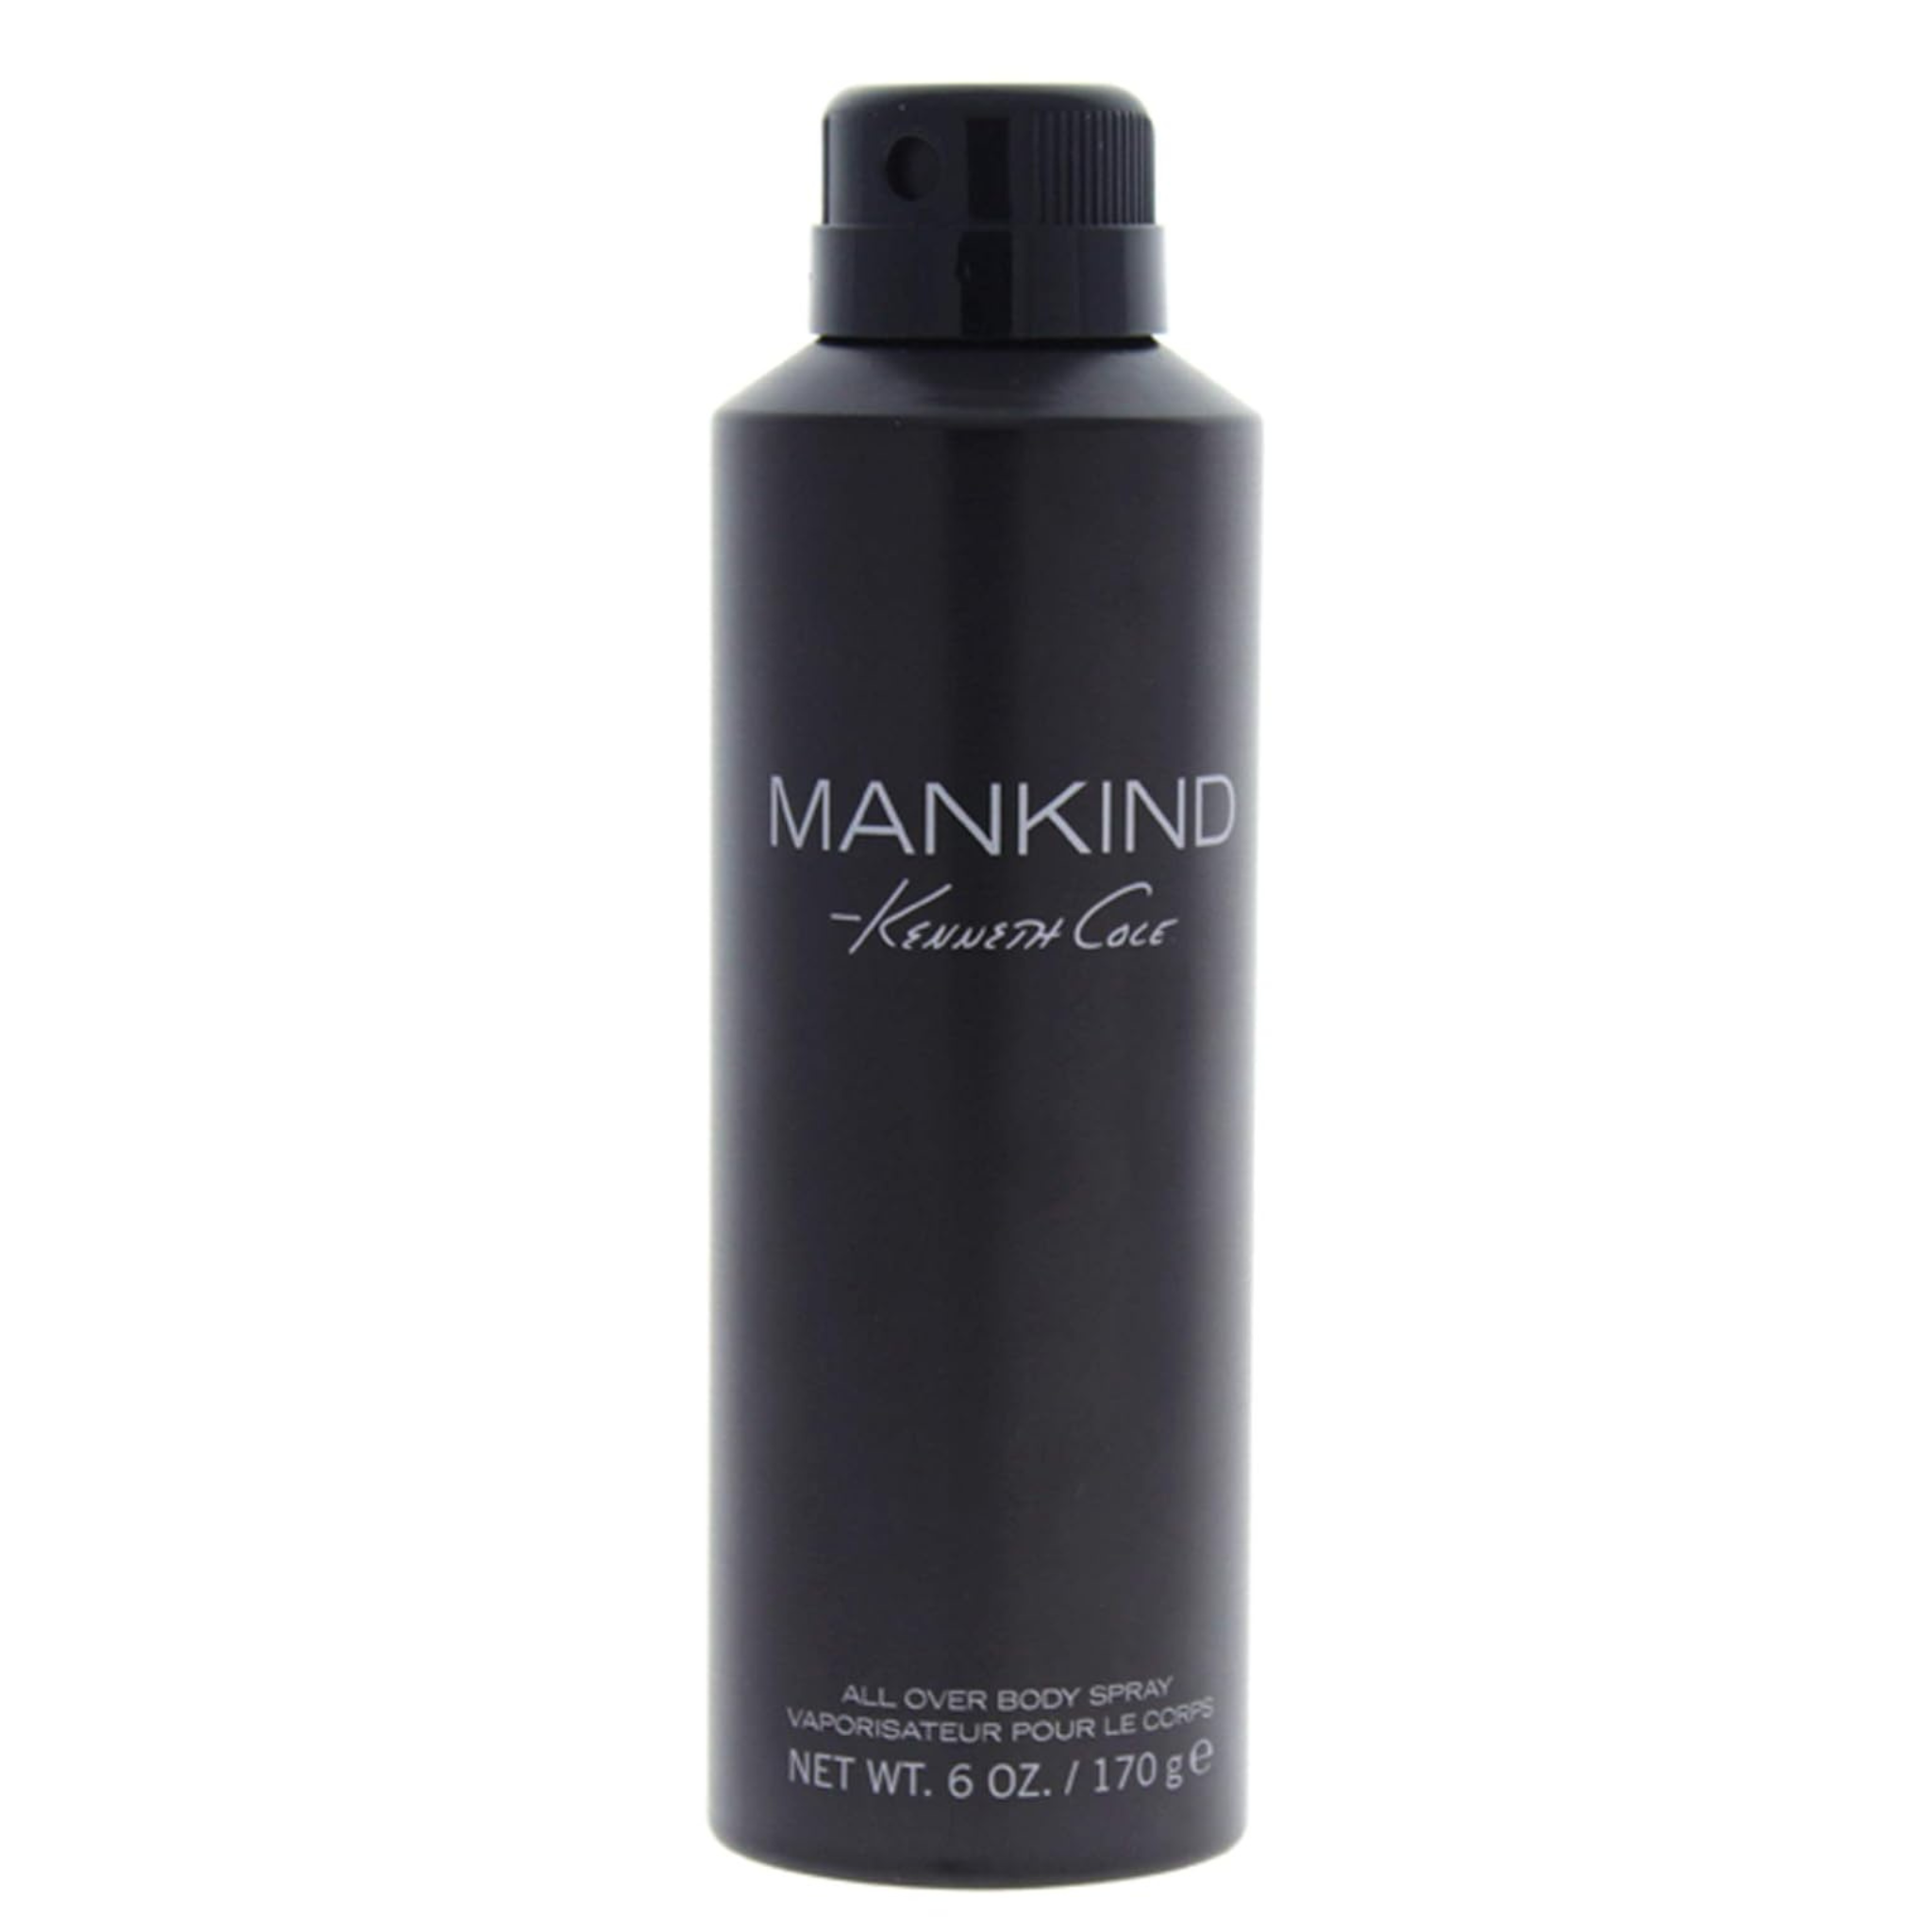 6-Oz Kenneth Cole Mankind Body Spray